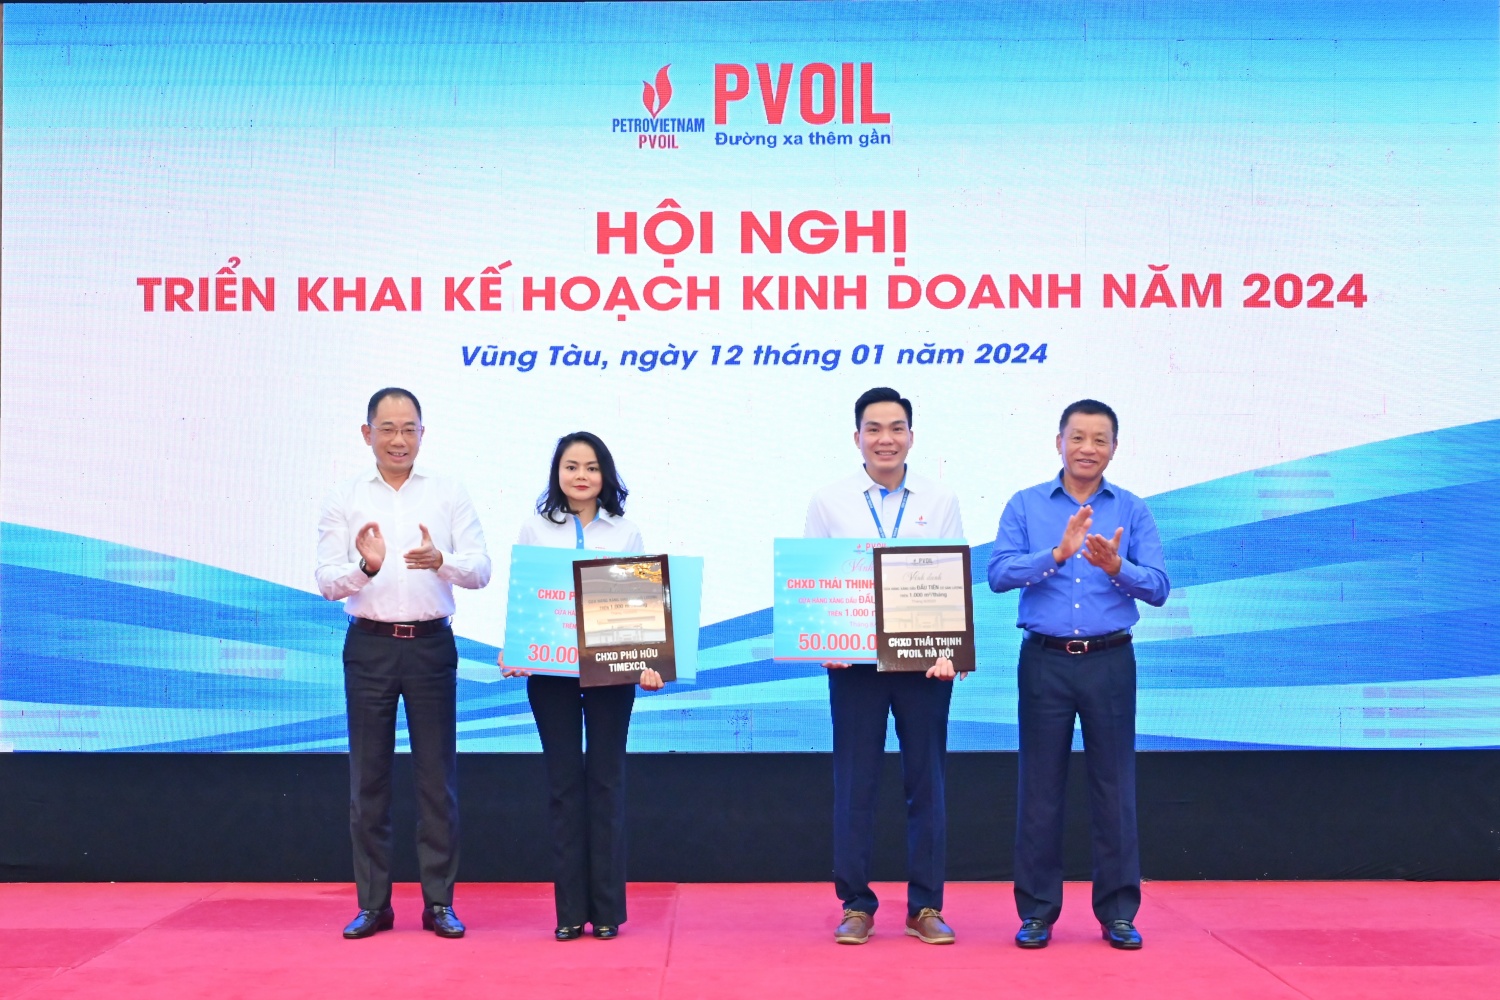 Lãnh đạo PVOIL trao khen thưởng cho 02 CHXD có sản lượng bán lẻ cao nhất trong hệ thống và duy trì mức trên 1.000m3/tháng